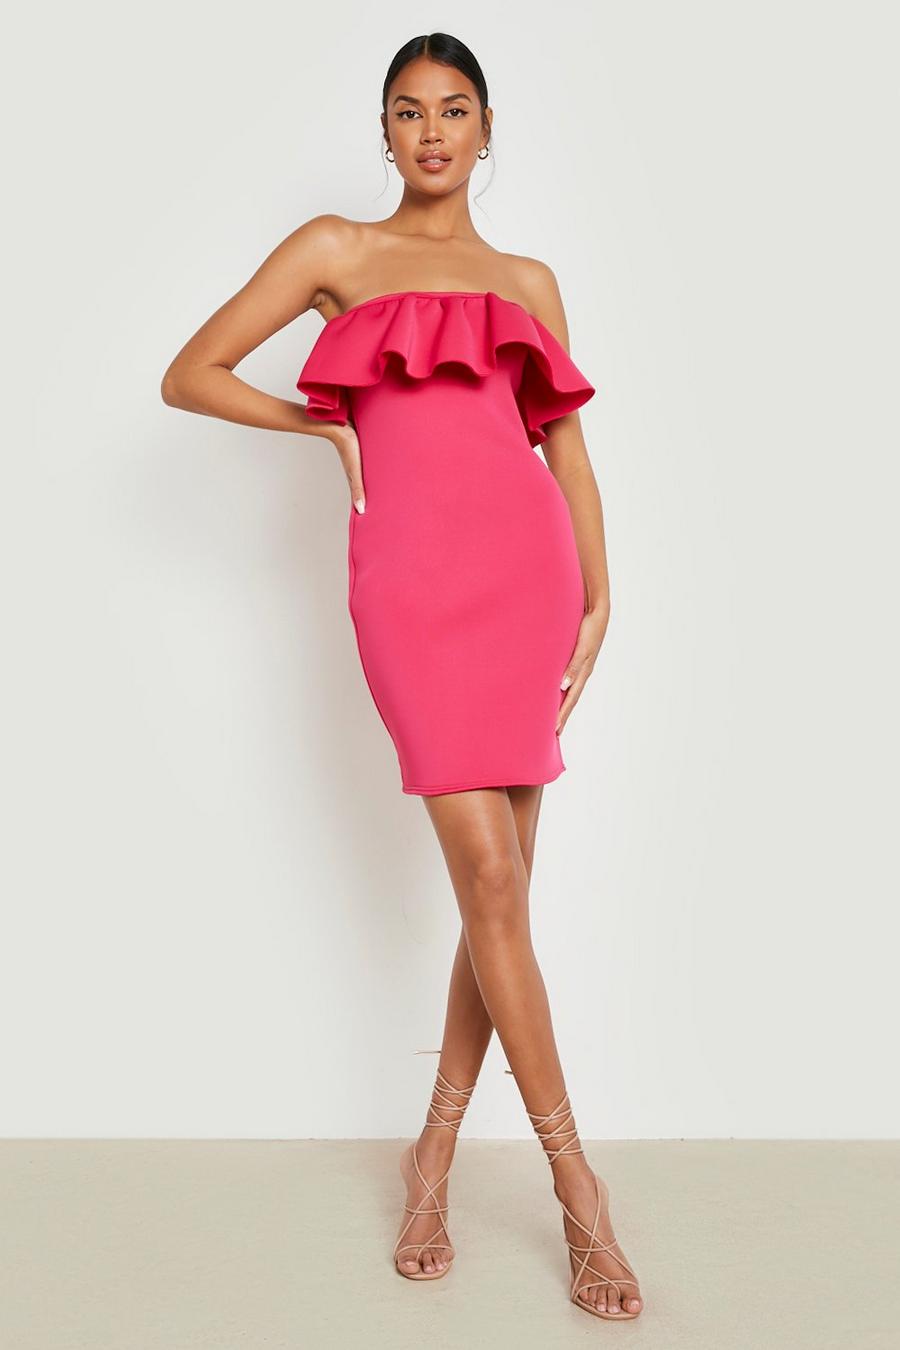 Bardot-Minikleid mit Rüschen, Hot pink rosa